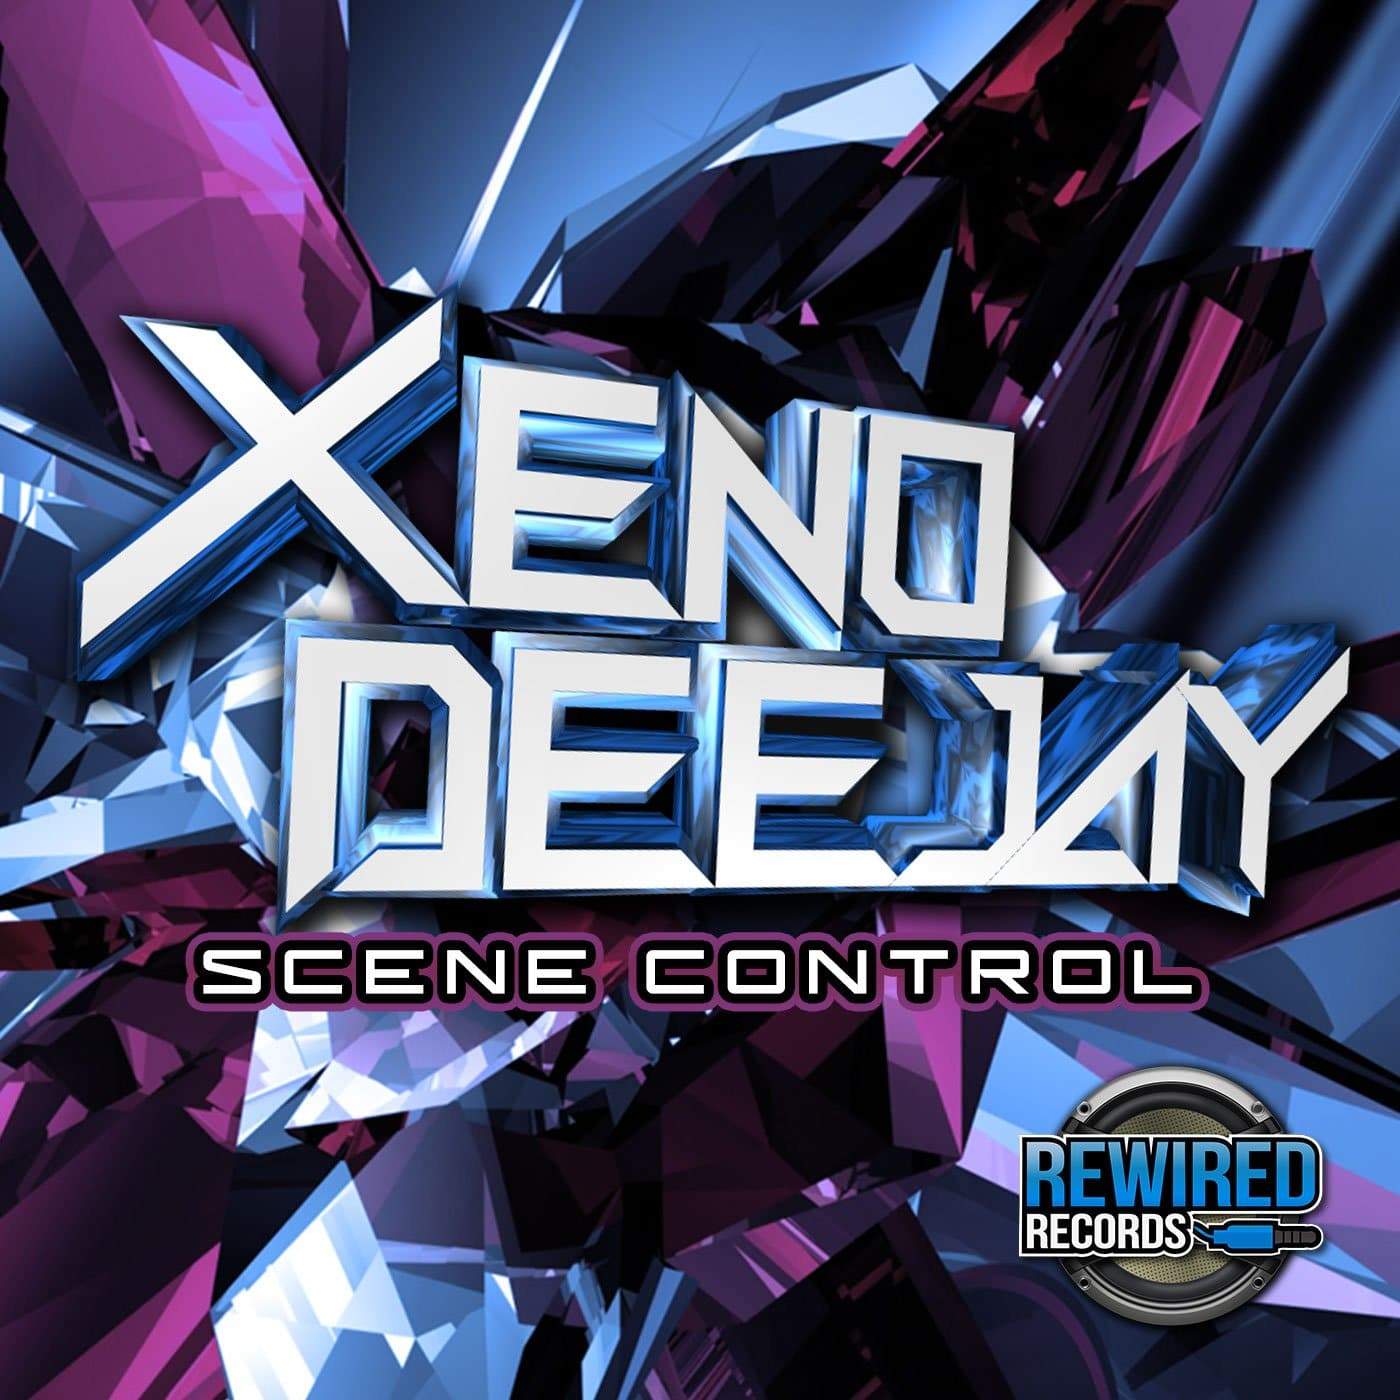 XenoDeejay - Scene Control - Rewired Records